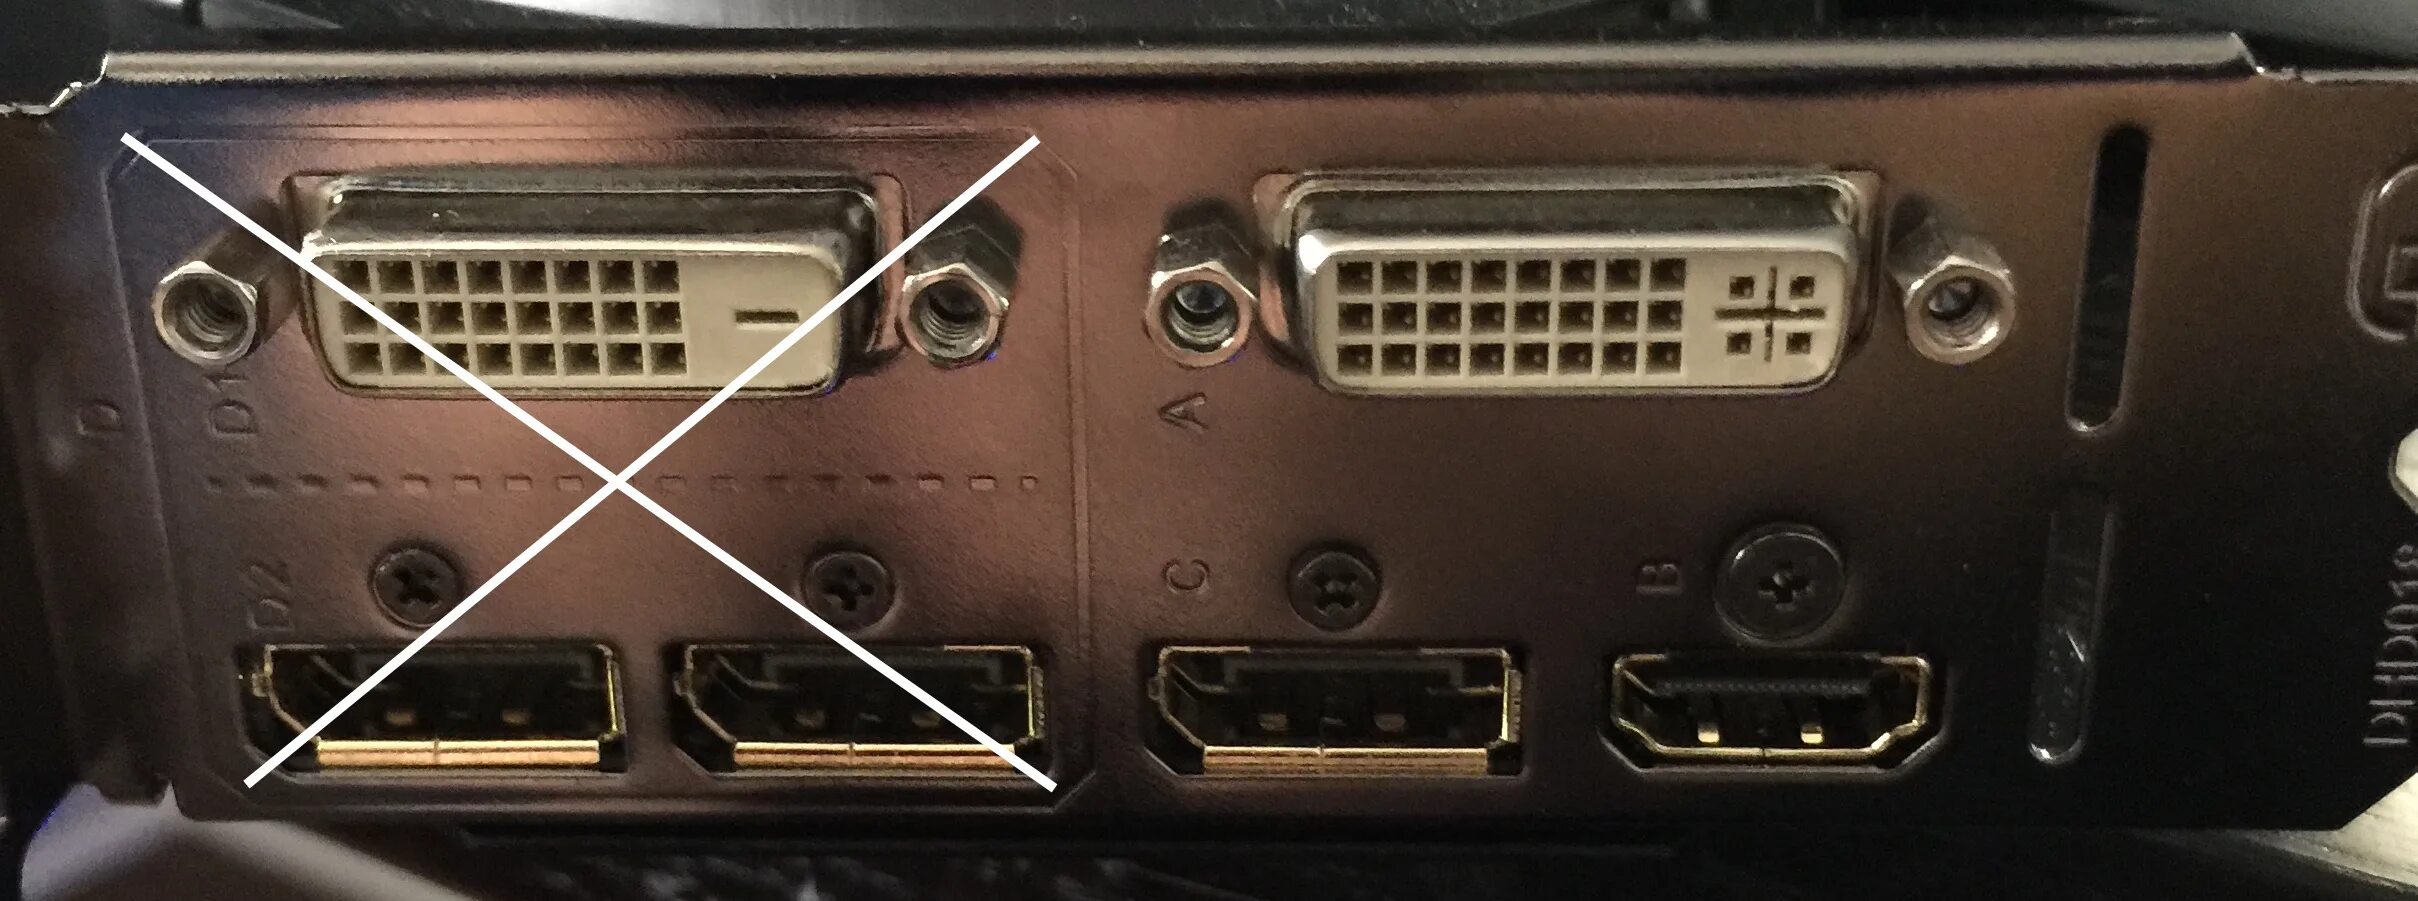 GTX 970 разъемы. Сгнившие выходы на дисплей видеокарта. Аудио-вход для HDMI GTX 970. Где находится дисплей порт на карте GTX 970.